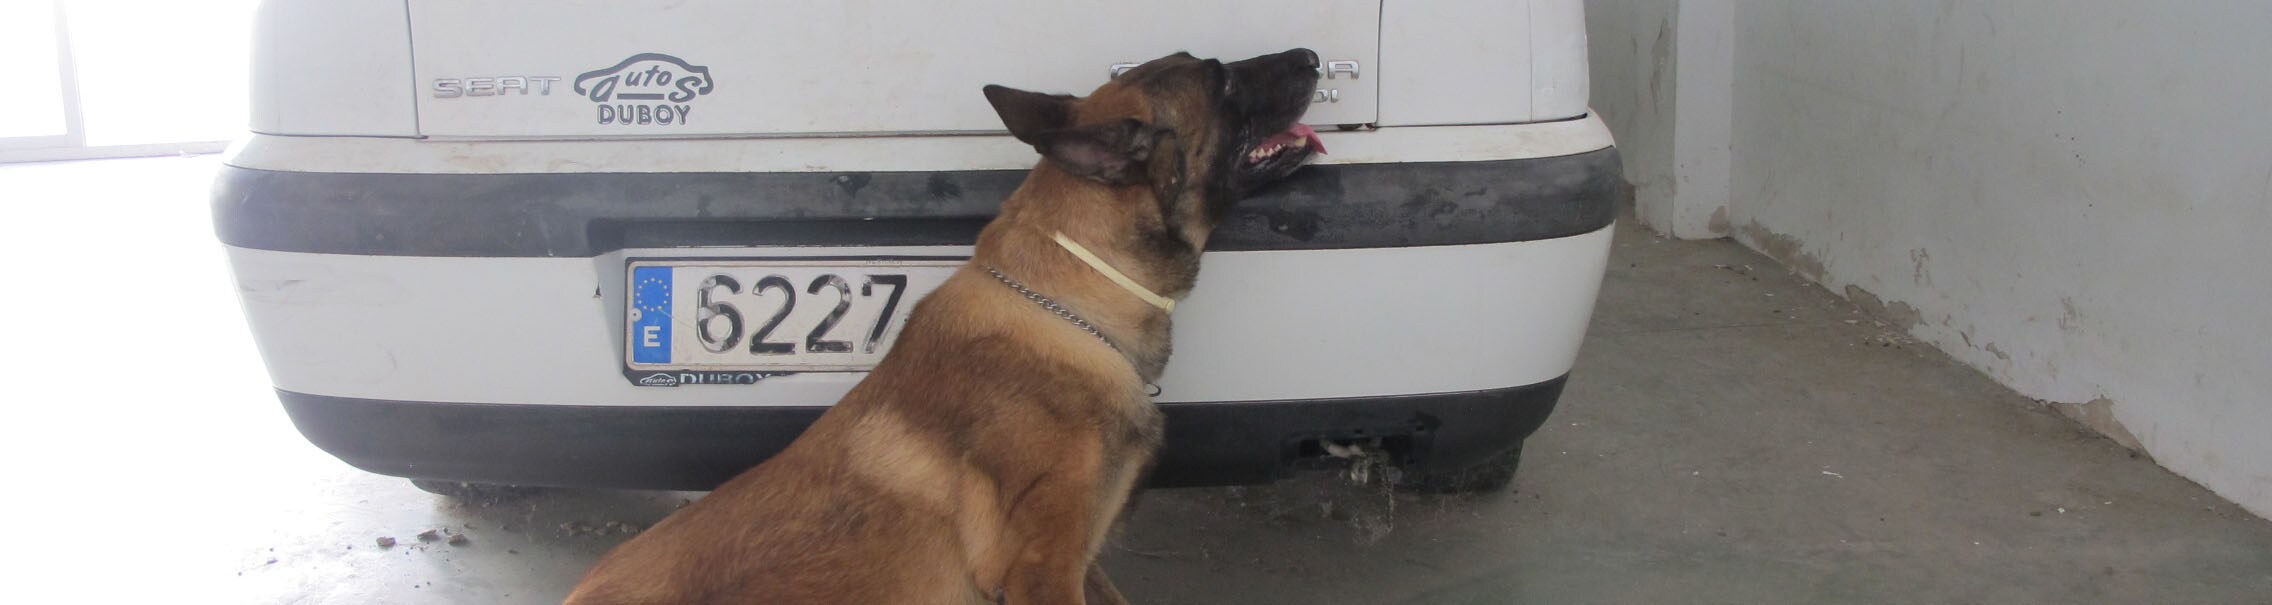 Uno de los perros de la unidad canina de El Cuervo, marcando el lugar donde se ha depositado una pequeña cantidad de droga